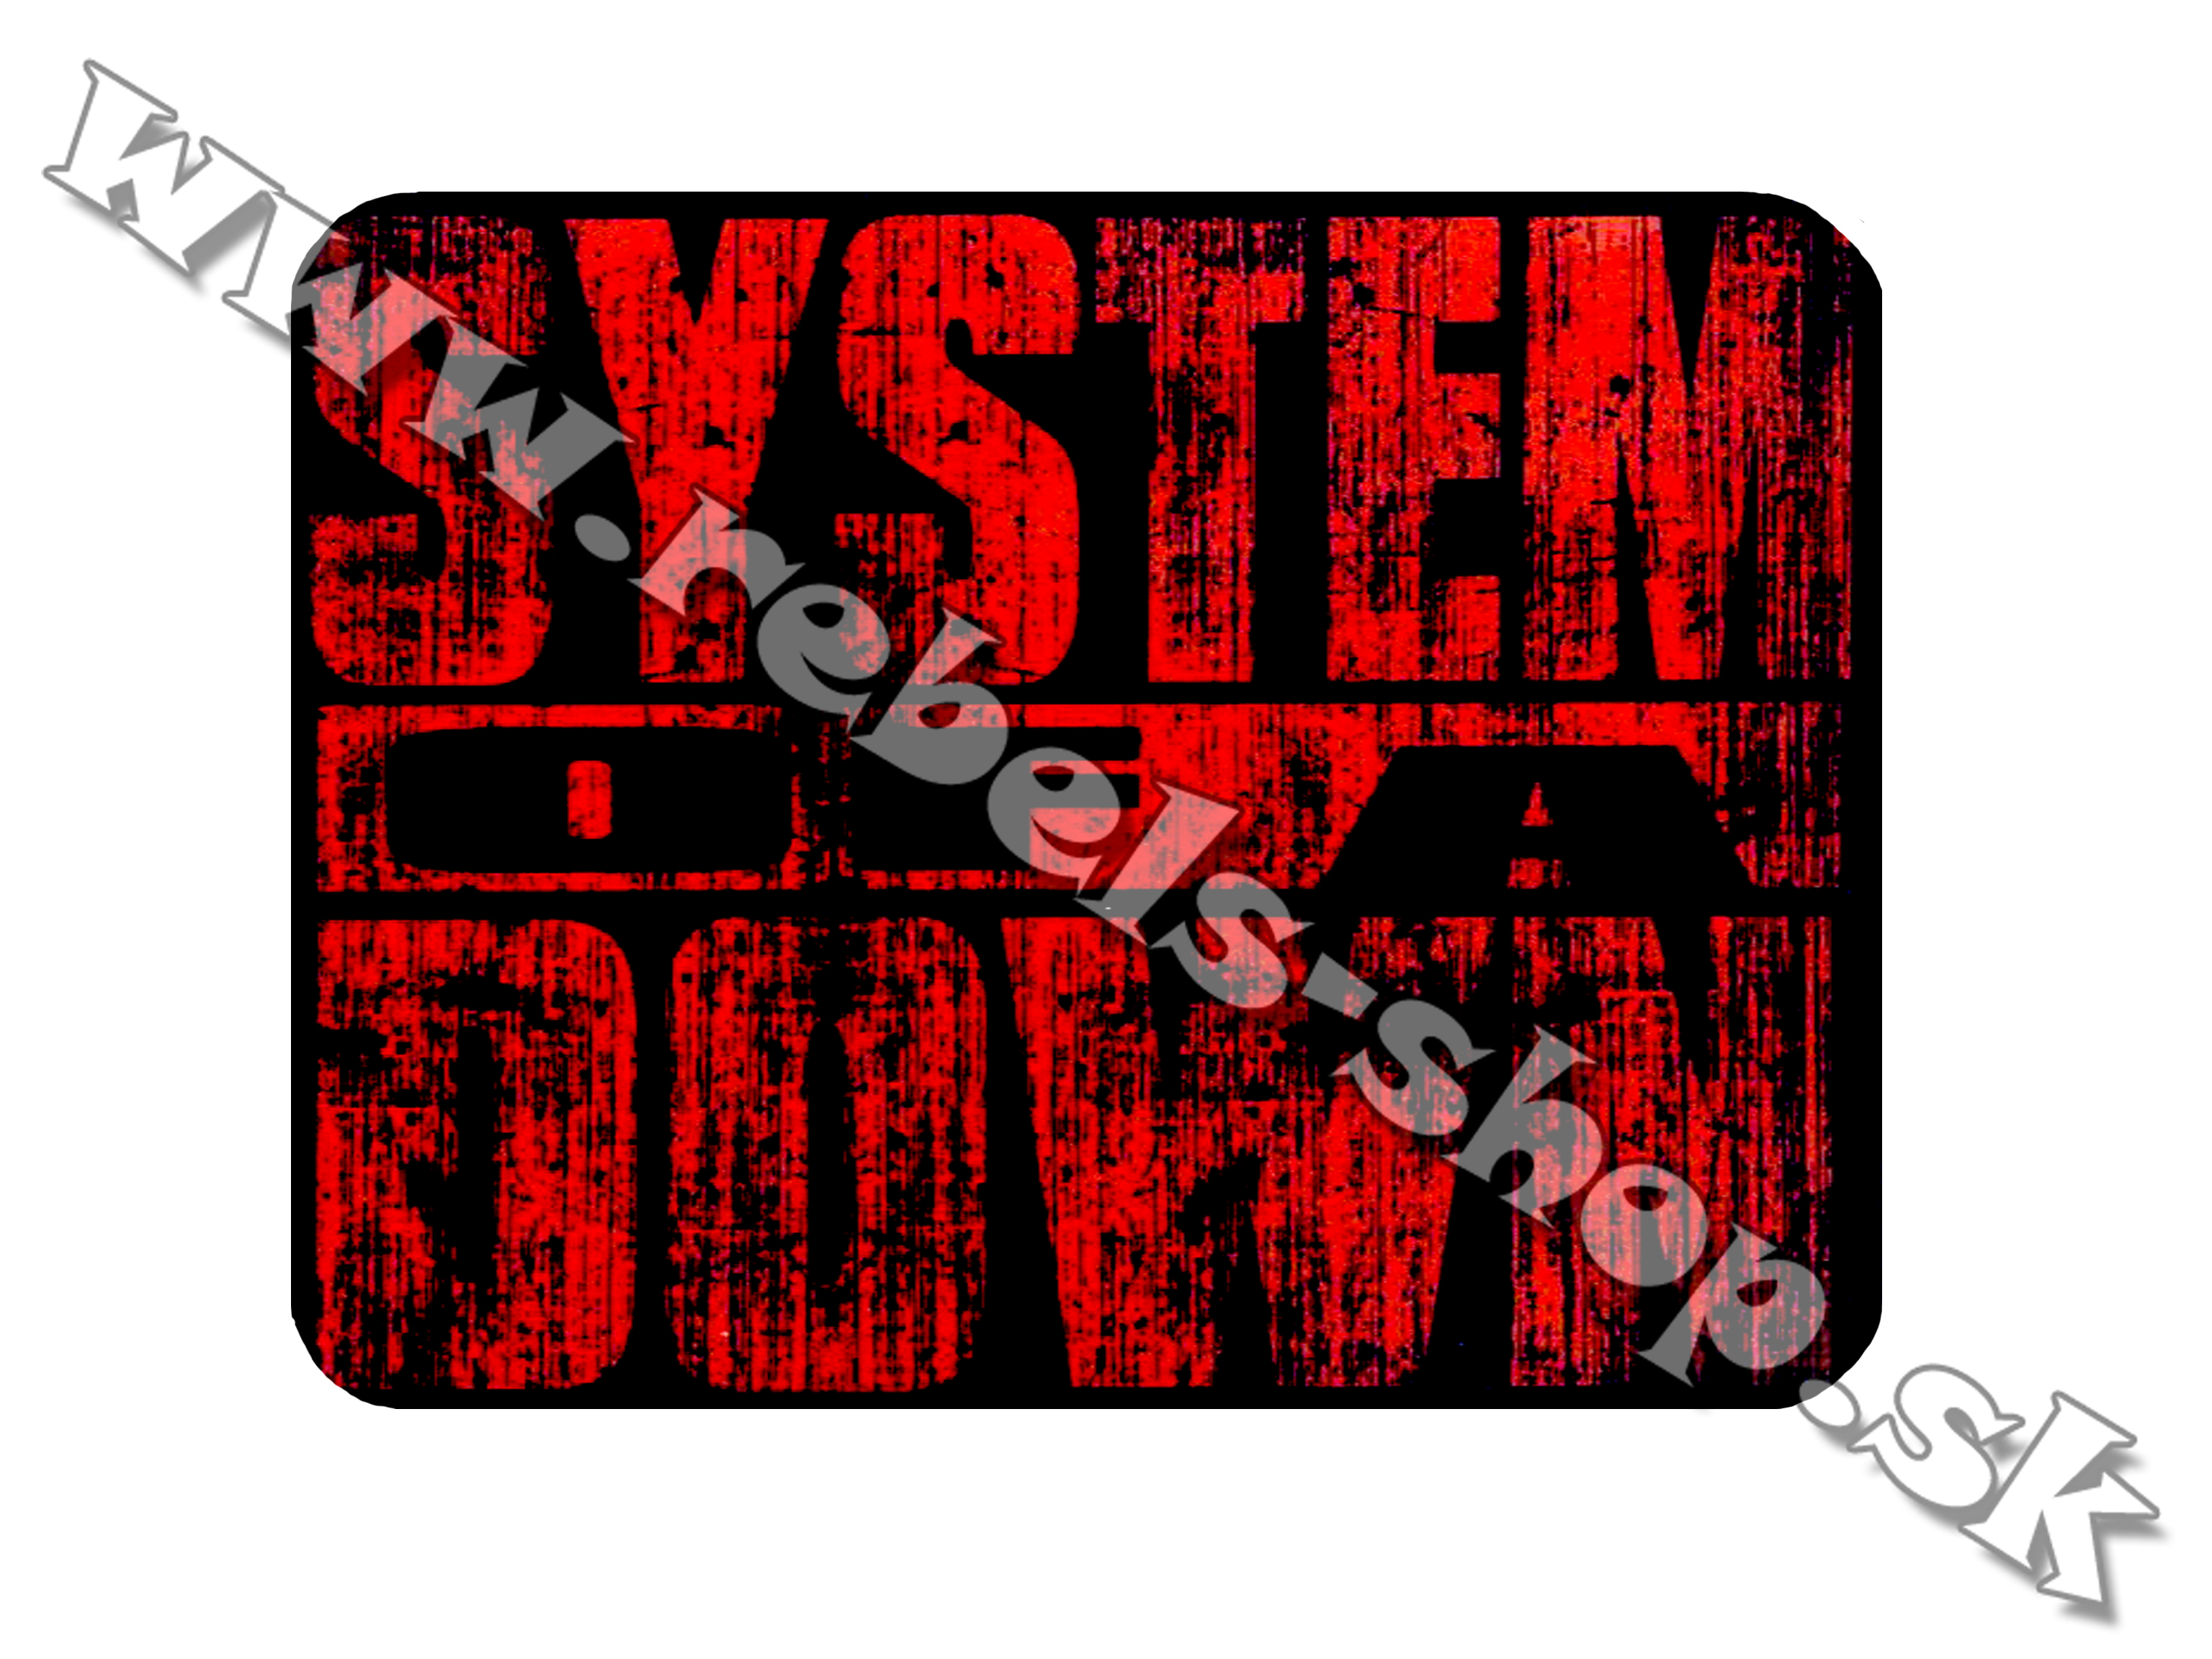 Podložka pod myš  "System of a Down"